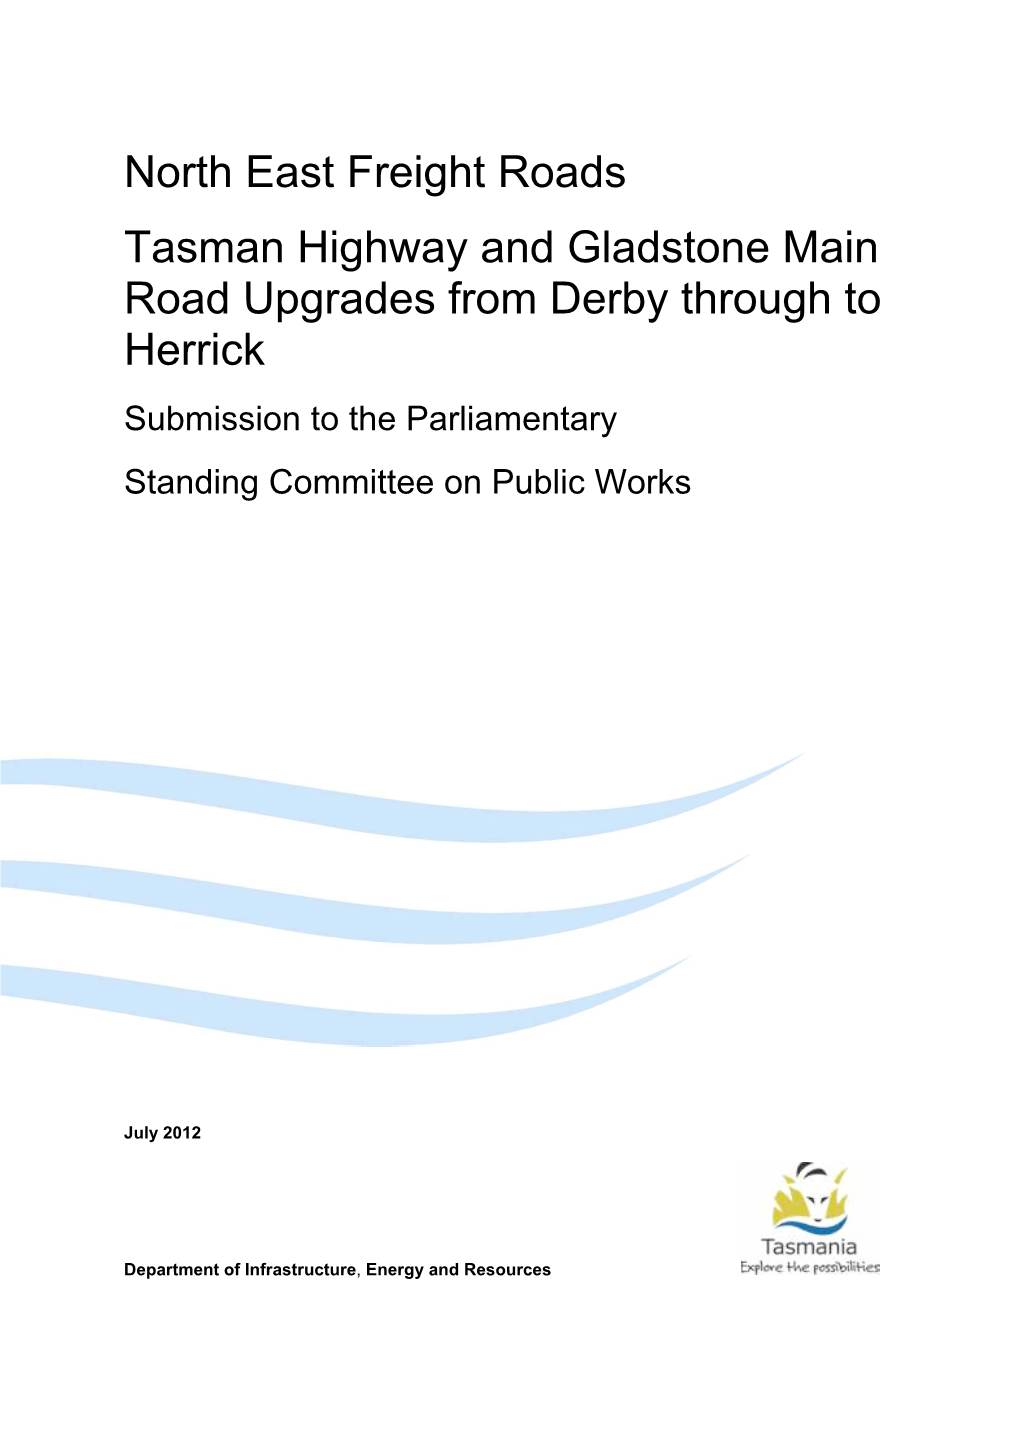 DIER Tasman Highway